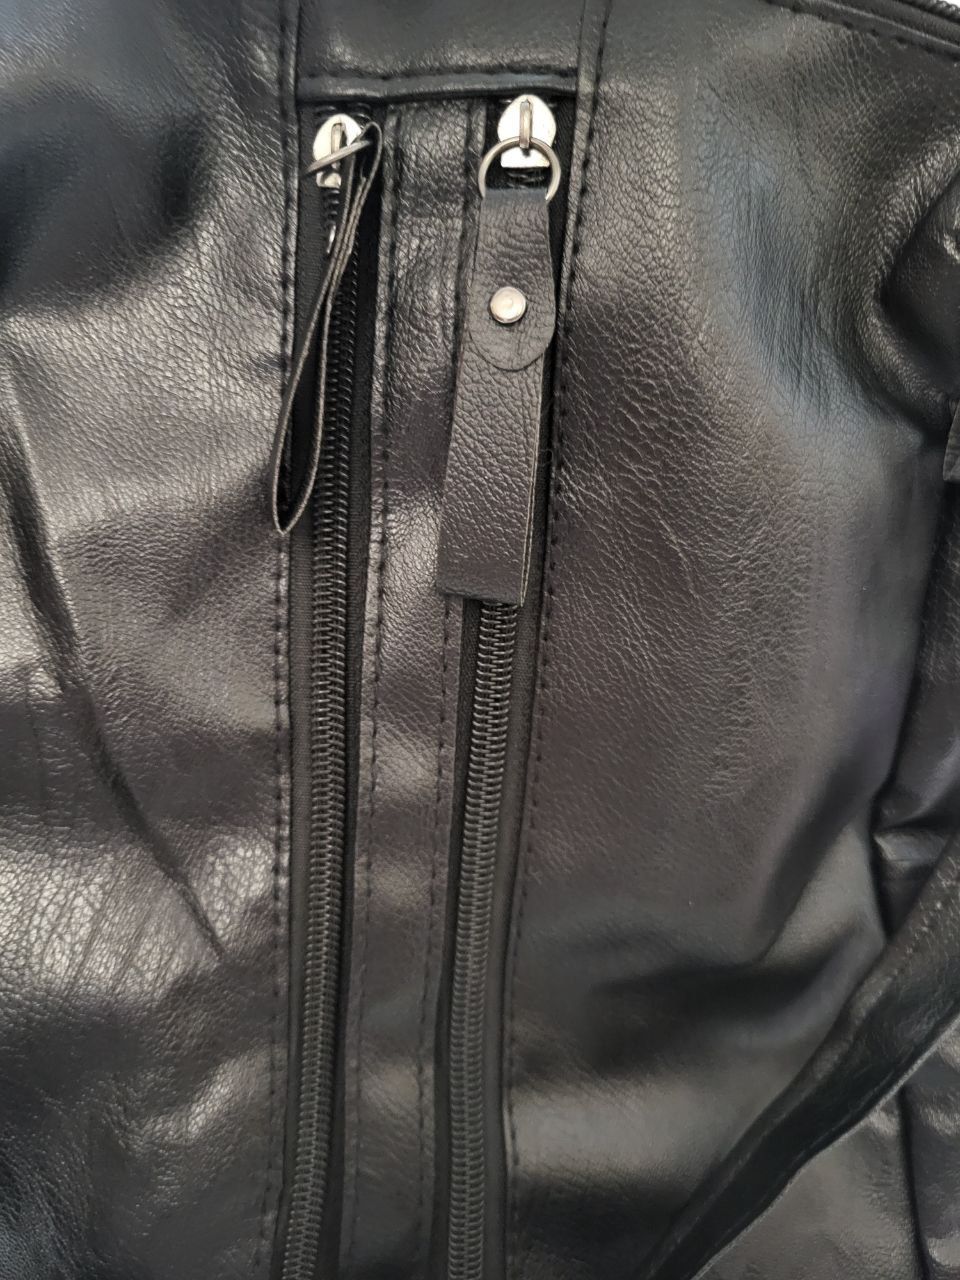 Рюкзак-сумка чорний екошкіра міський